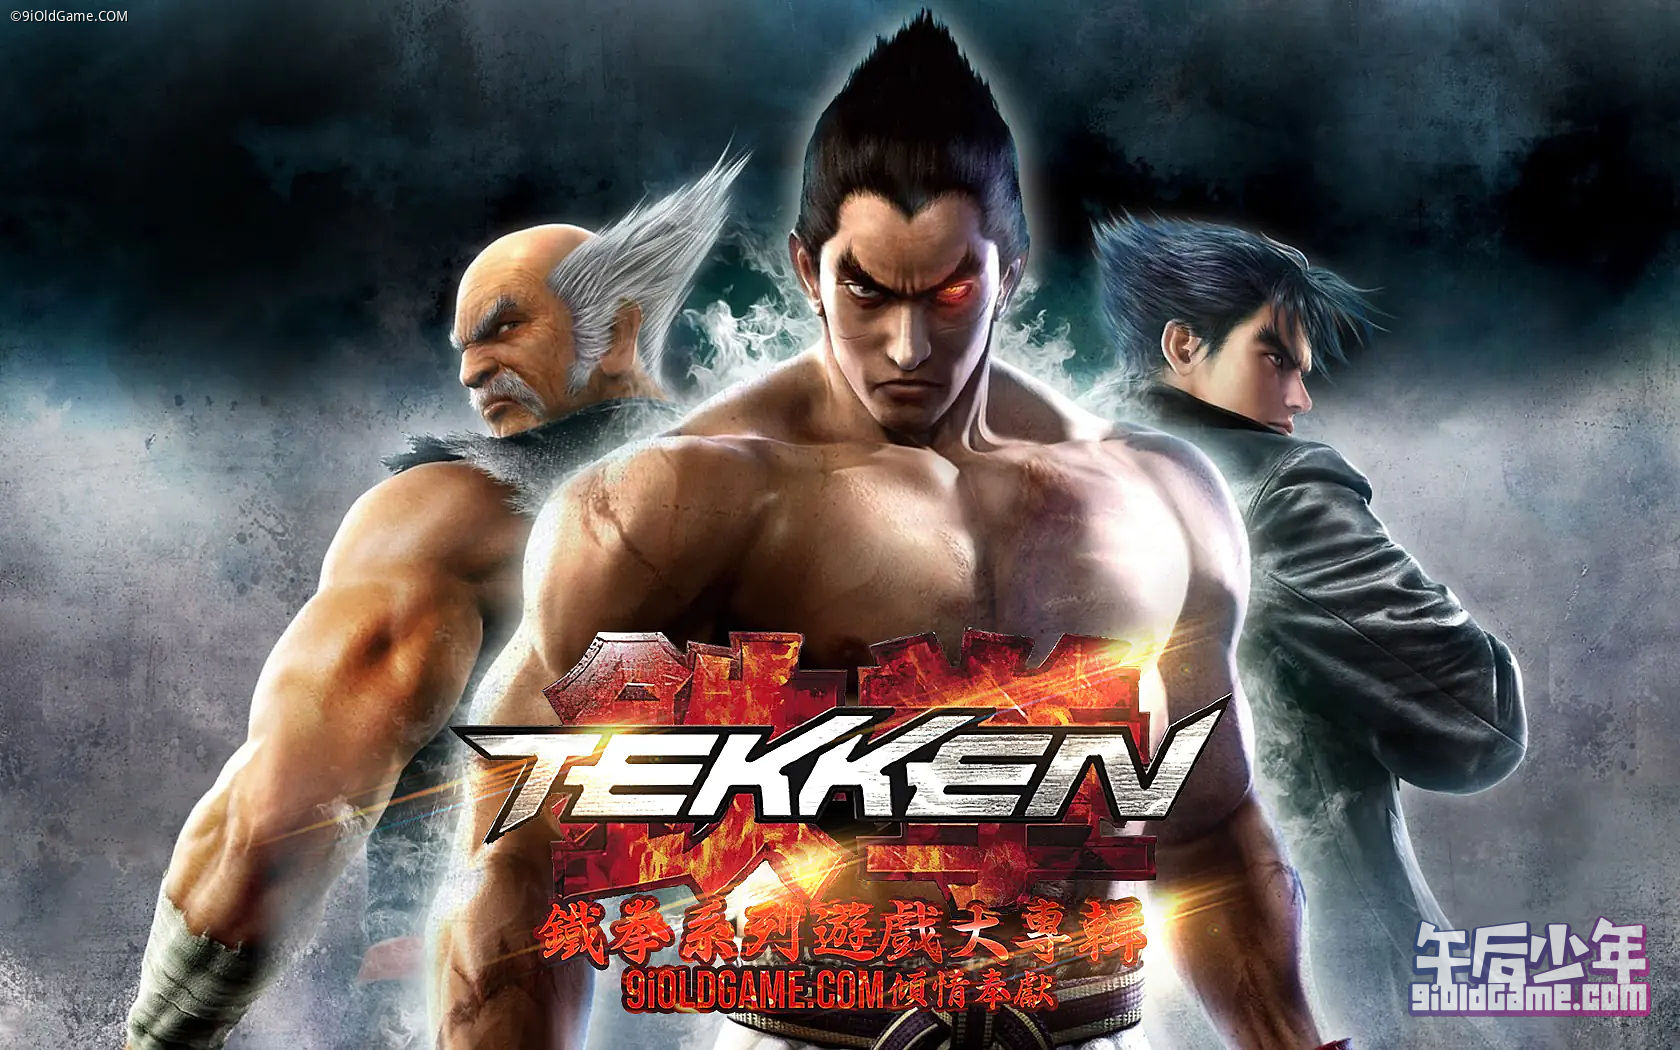 铁拳(Tekken)系列游戏大专辑